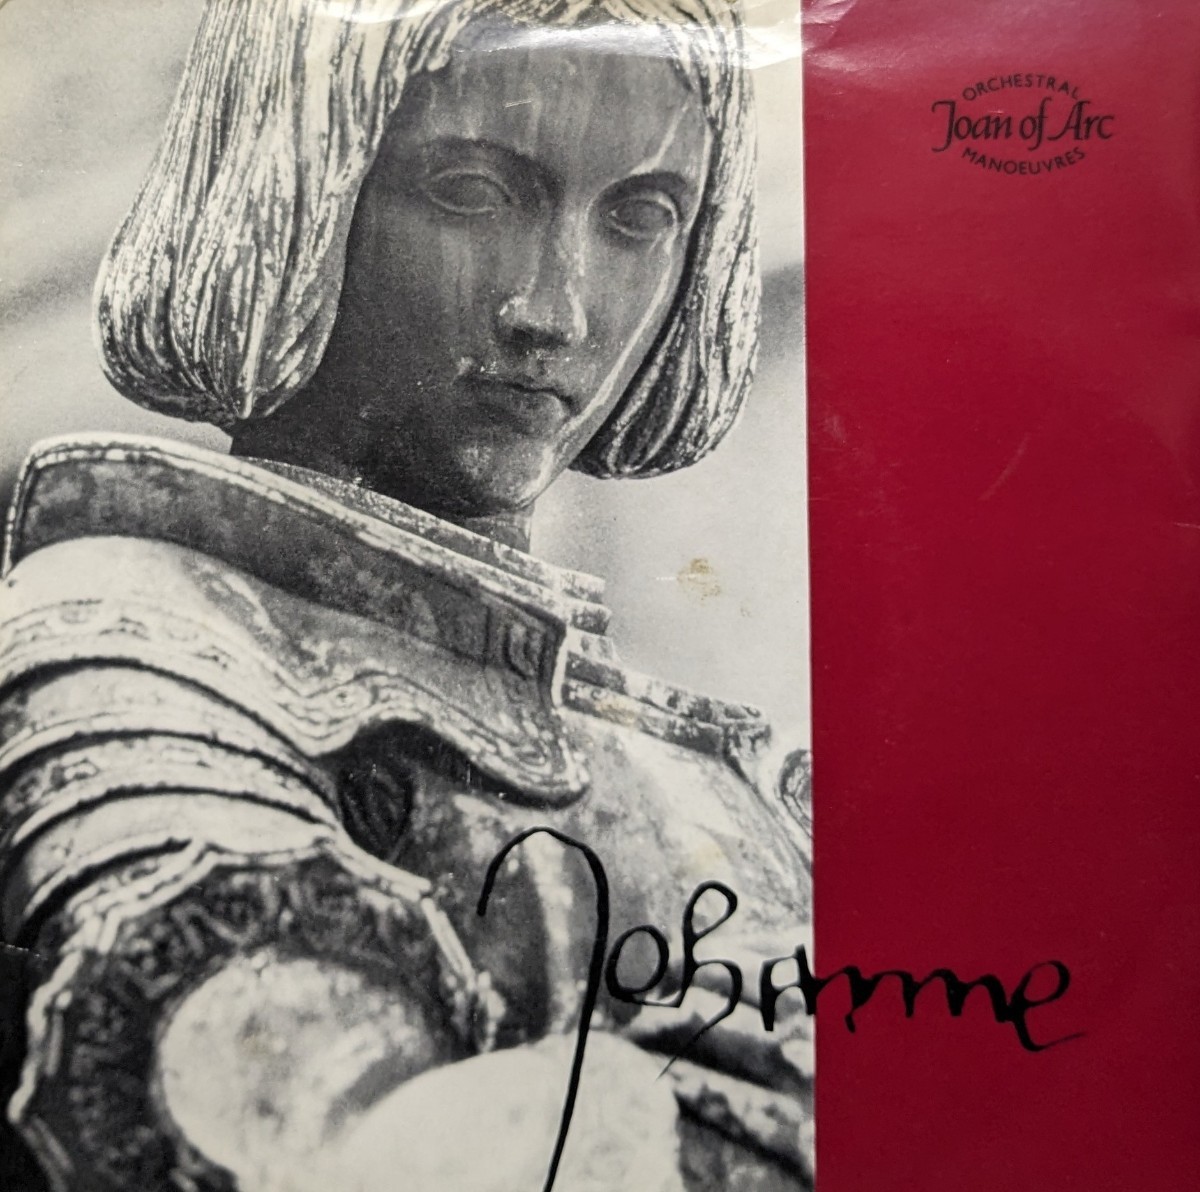 ☆ Оркестр маневры/Joan of Arc 1981'uk Dindisc7inch